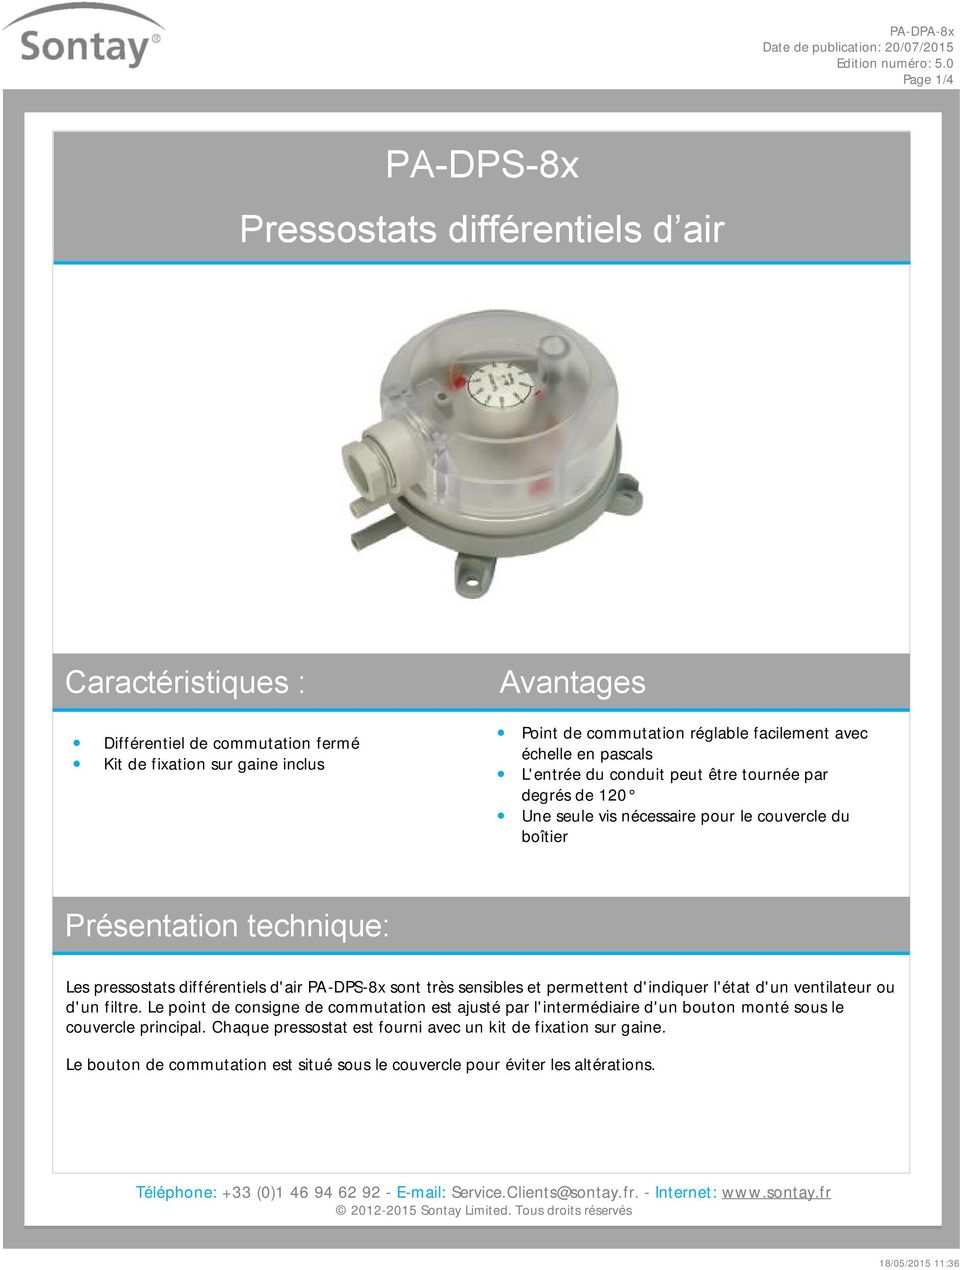 pressostats différentiels d'air PA-DPS-8x sont très sensibles et permettent d'indiquer l'état d'un ventilateur ou d'un filtre.